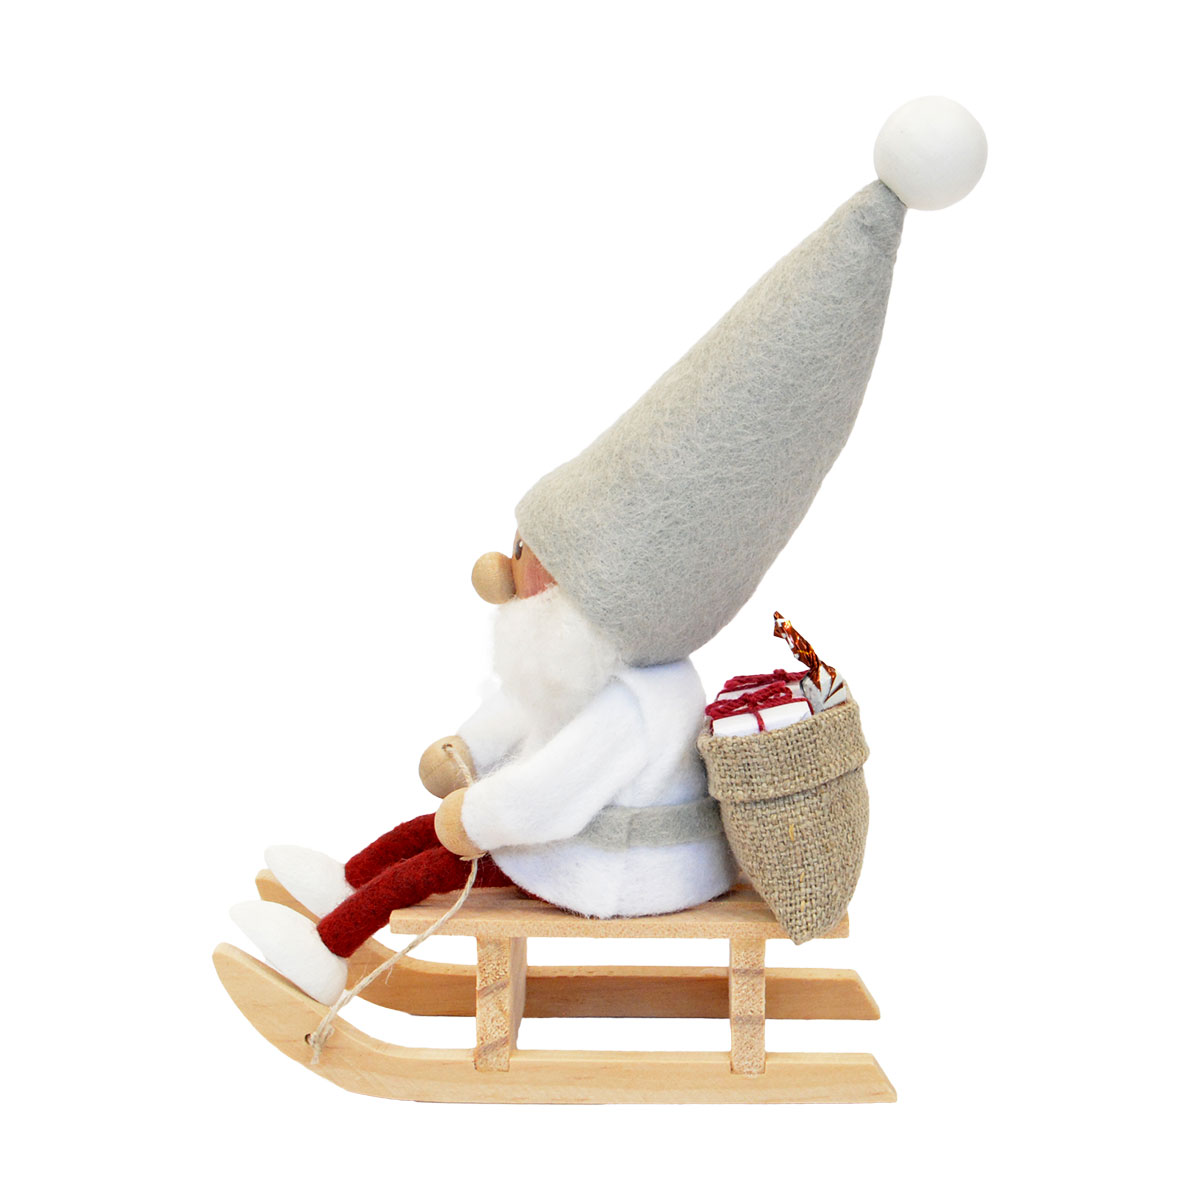 NORDIKA nisse ノルディカ 送料無料限定セール中 ニッセ そりに乗るサンタ サイレントナイト クリスマス 木製人形